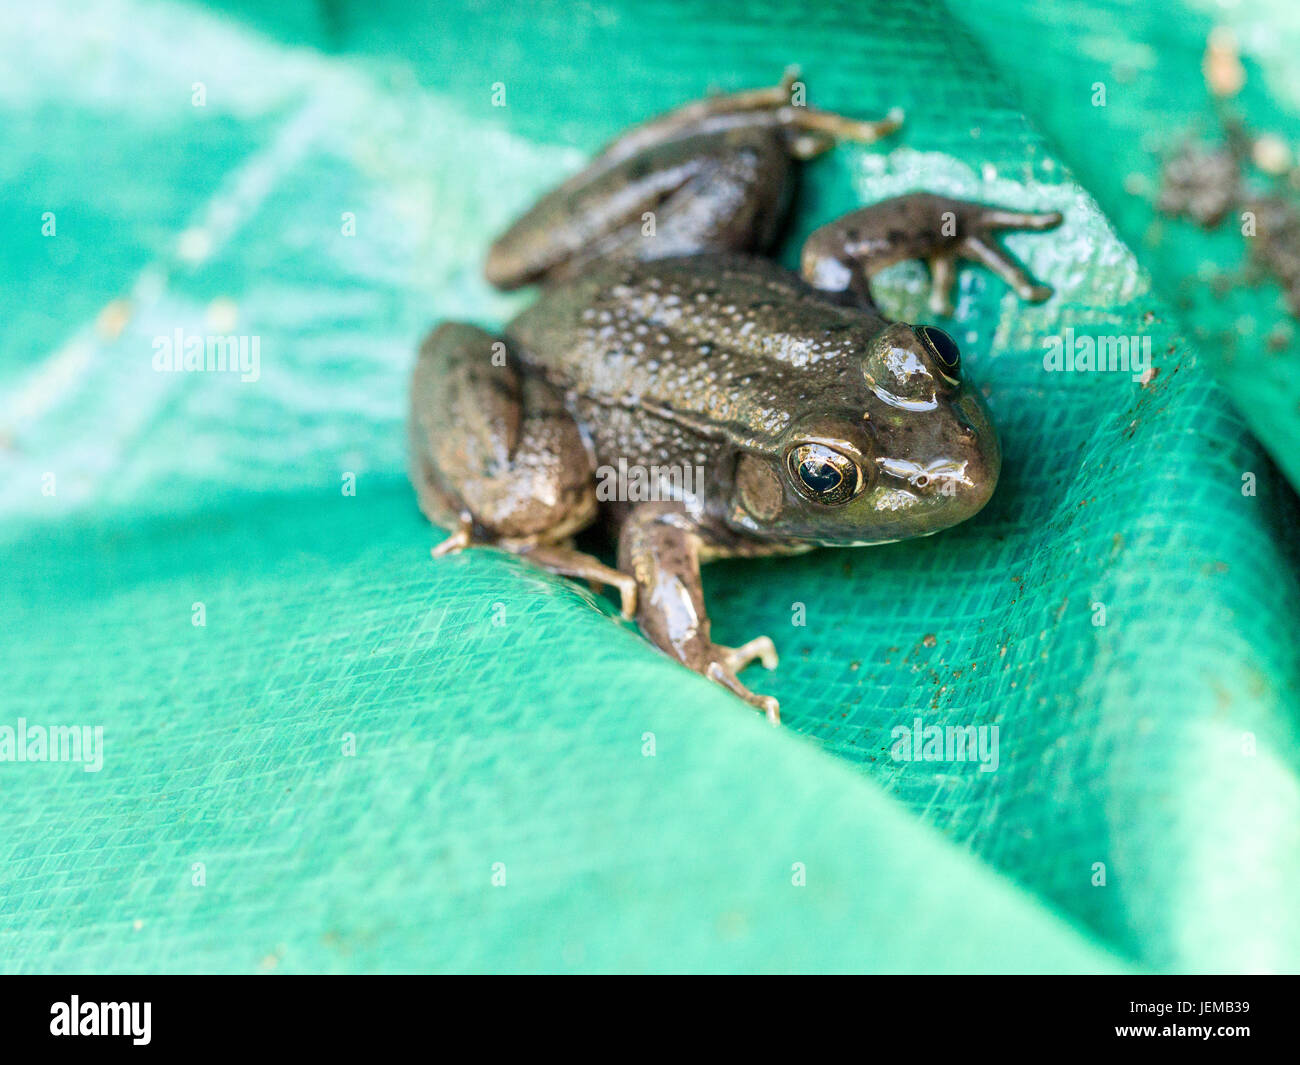 Rana verde in un telo: una rana verde nelle pieghe di un tessuto telo in plastica. Foto Stock